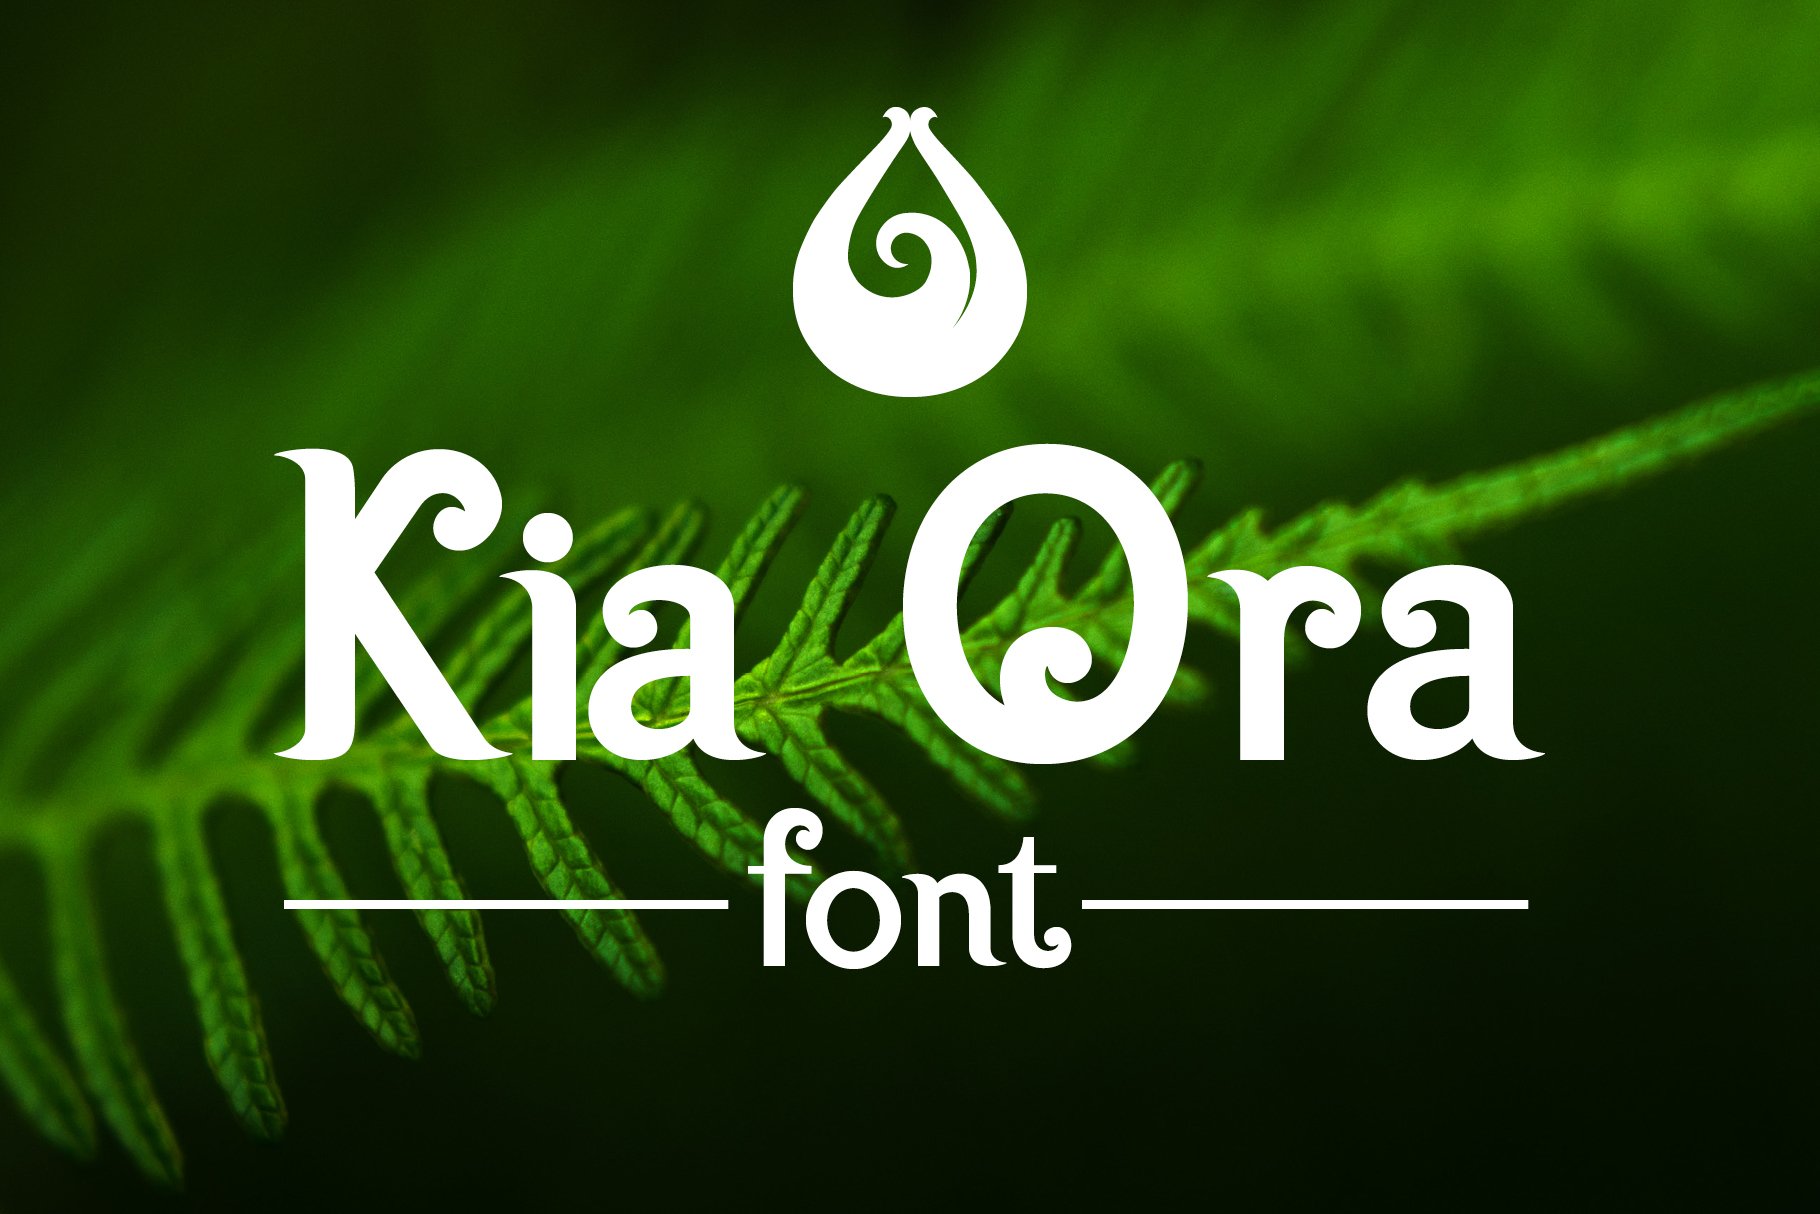 Kia Ora Font cover image.